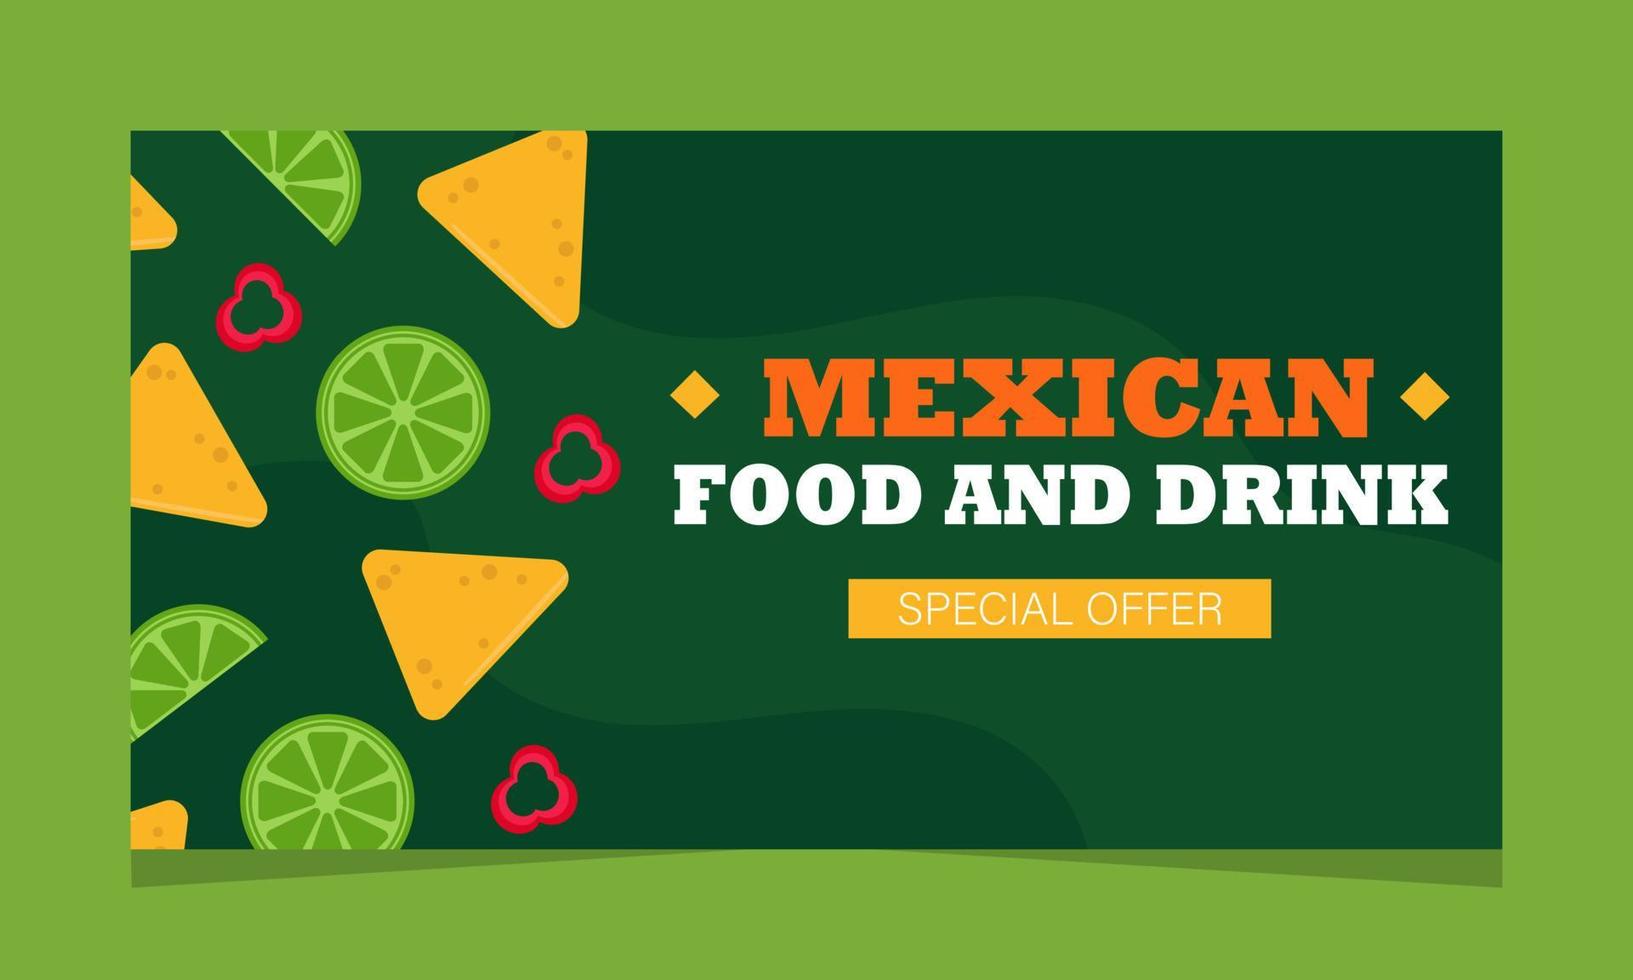 mexikanisches Essensangebot, Webseite. landebanner mit promo, vektorillustration. mexikanisches Restaurant. Kalk, Nachos und Paprika auf grünem Hintergrund vektor